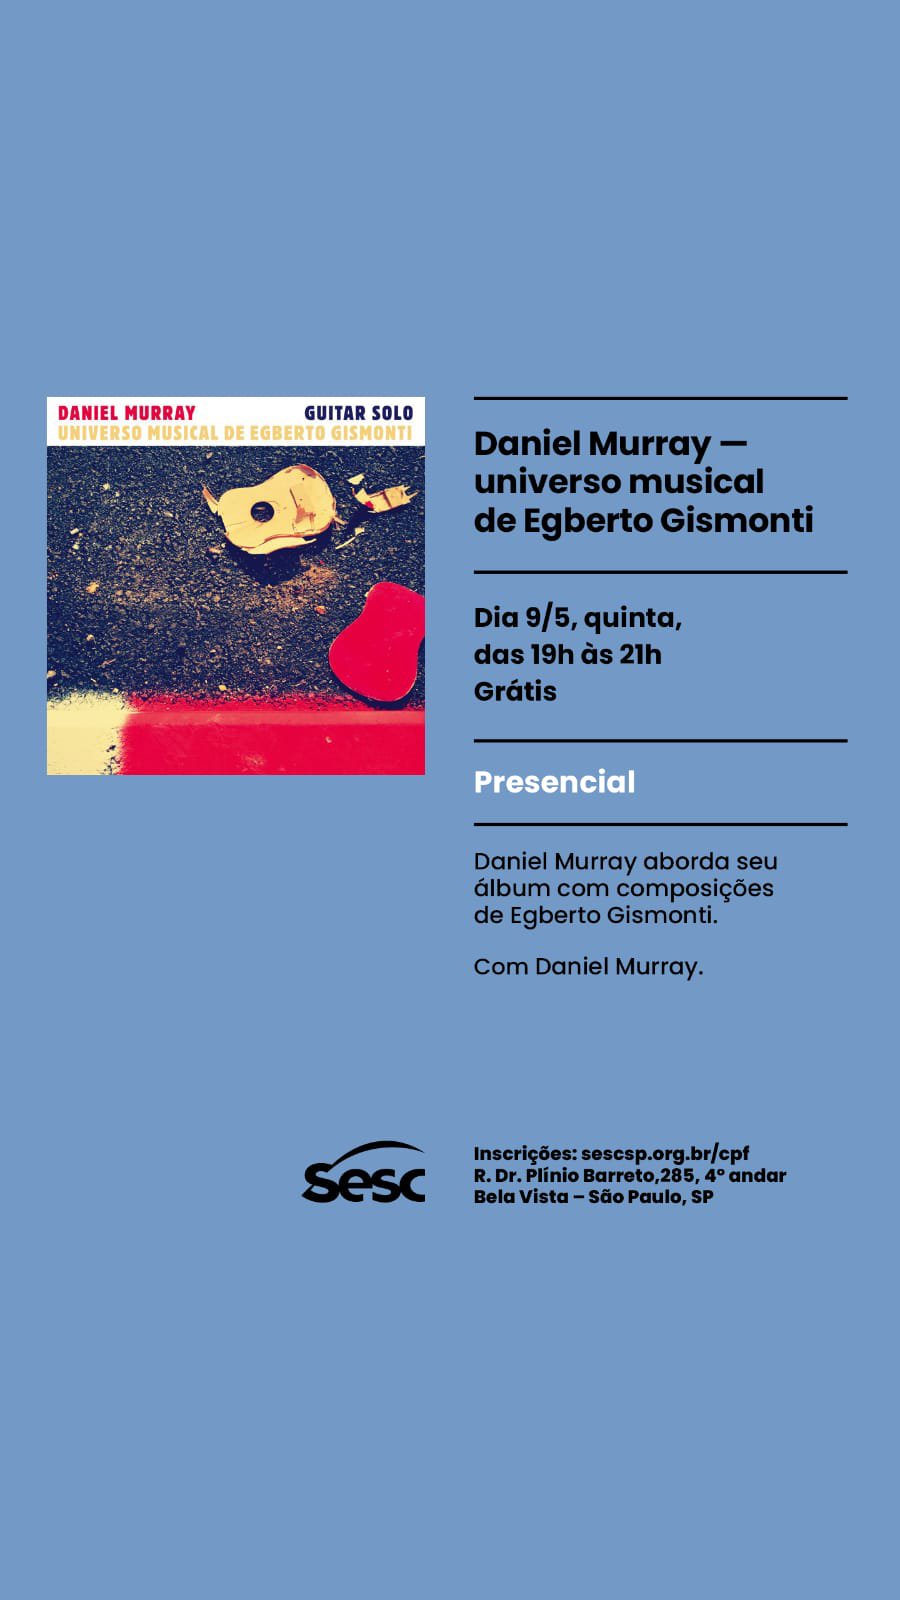 Daniel Murray-universo musical de Egberto Gismonti- dia 25 de maio às 20 horas